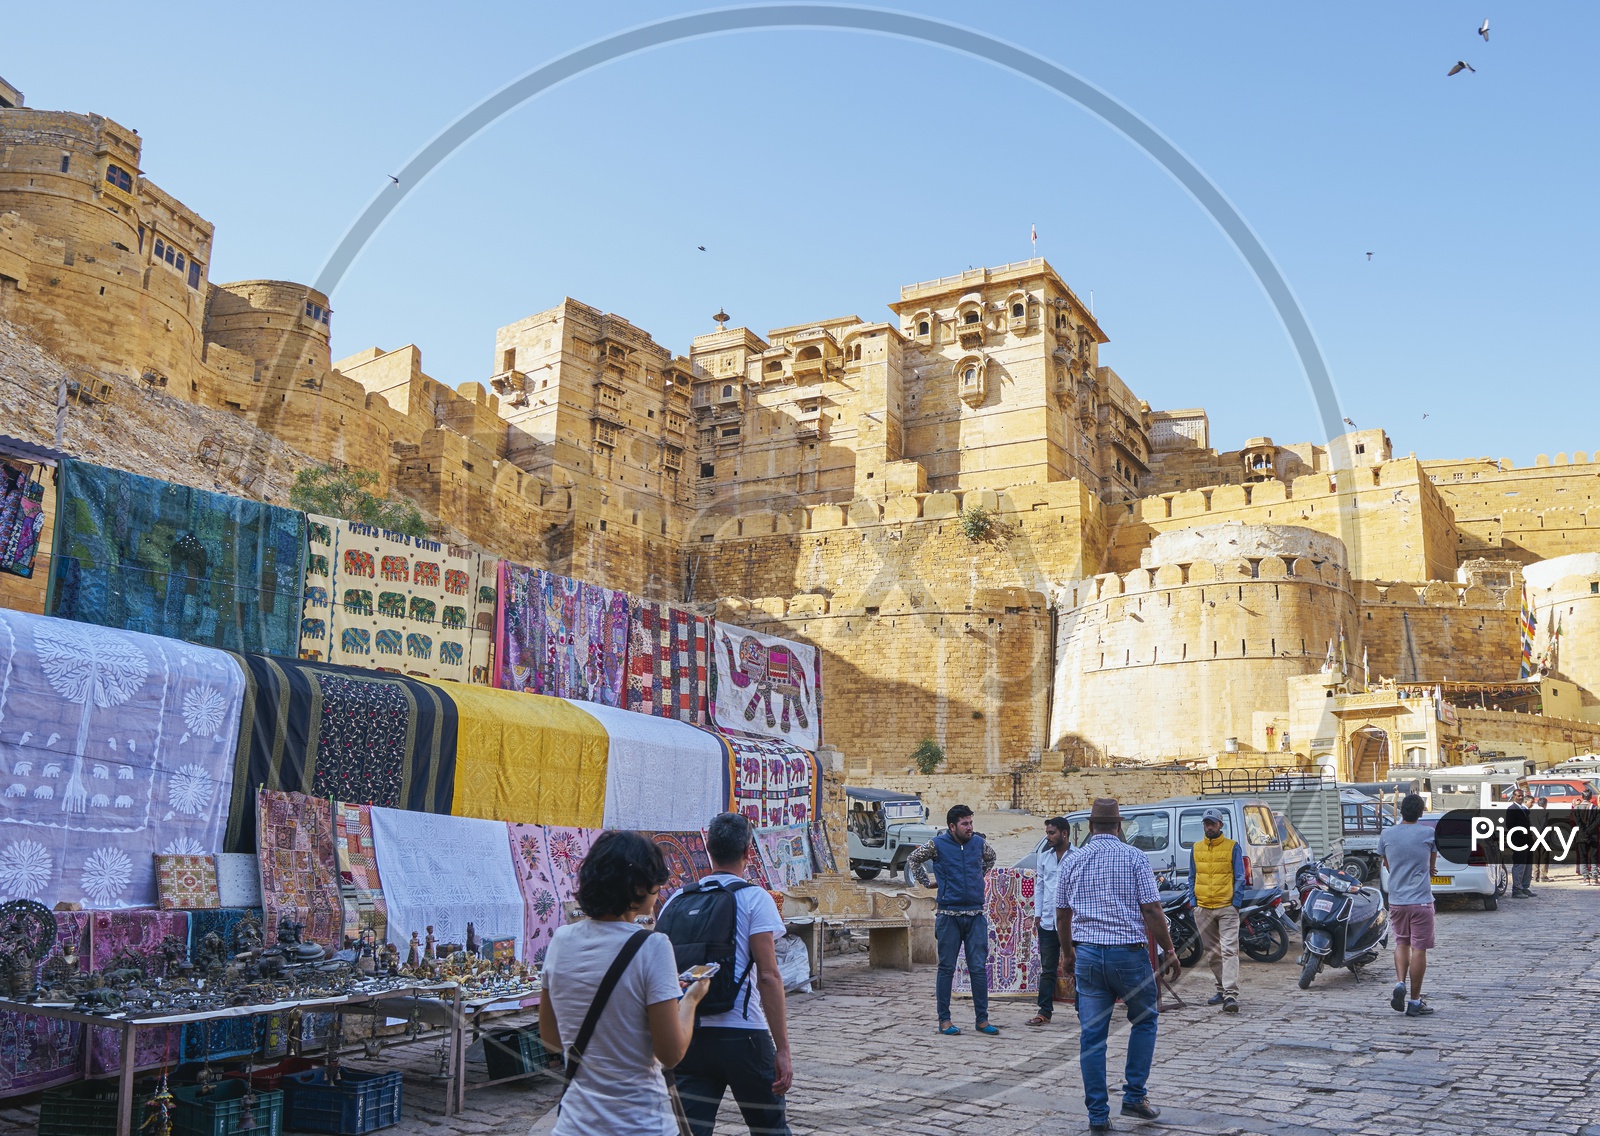 Market by Jaisalmer Fort